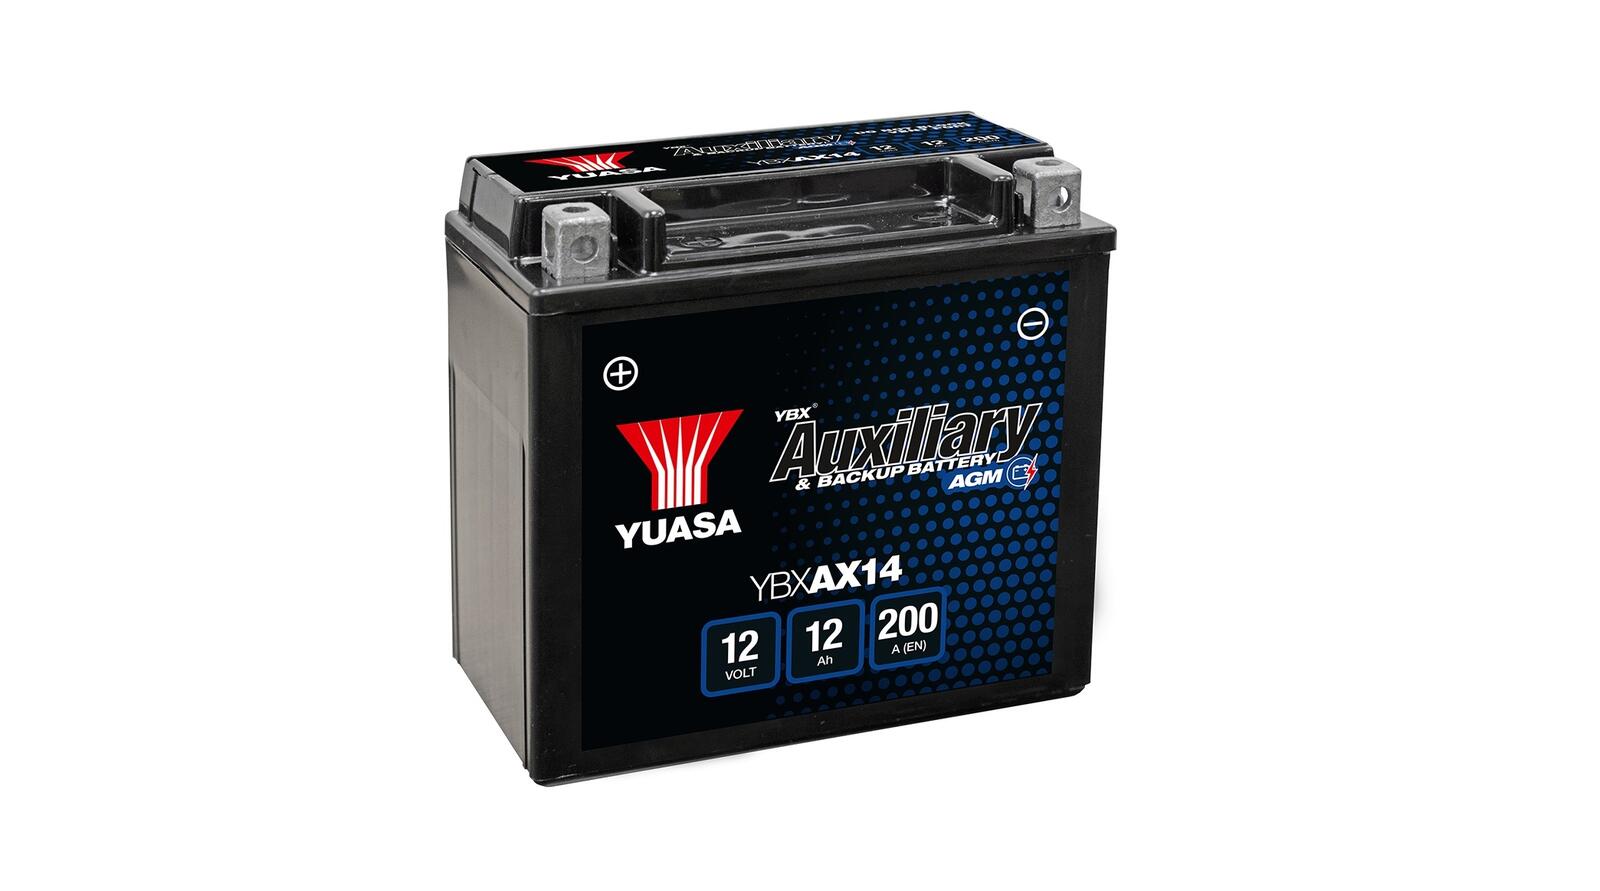 Hilfsbatterien kommen auch in Elektrofahrzeugen zum Einsatz und versorgen wichtige Systeme mit Spannung abseits der HV-Batterie.